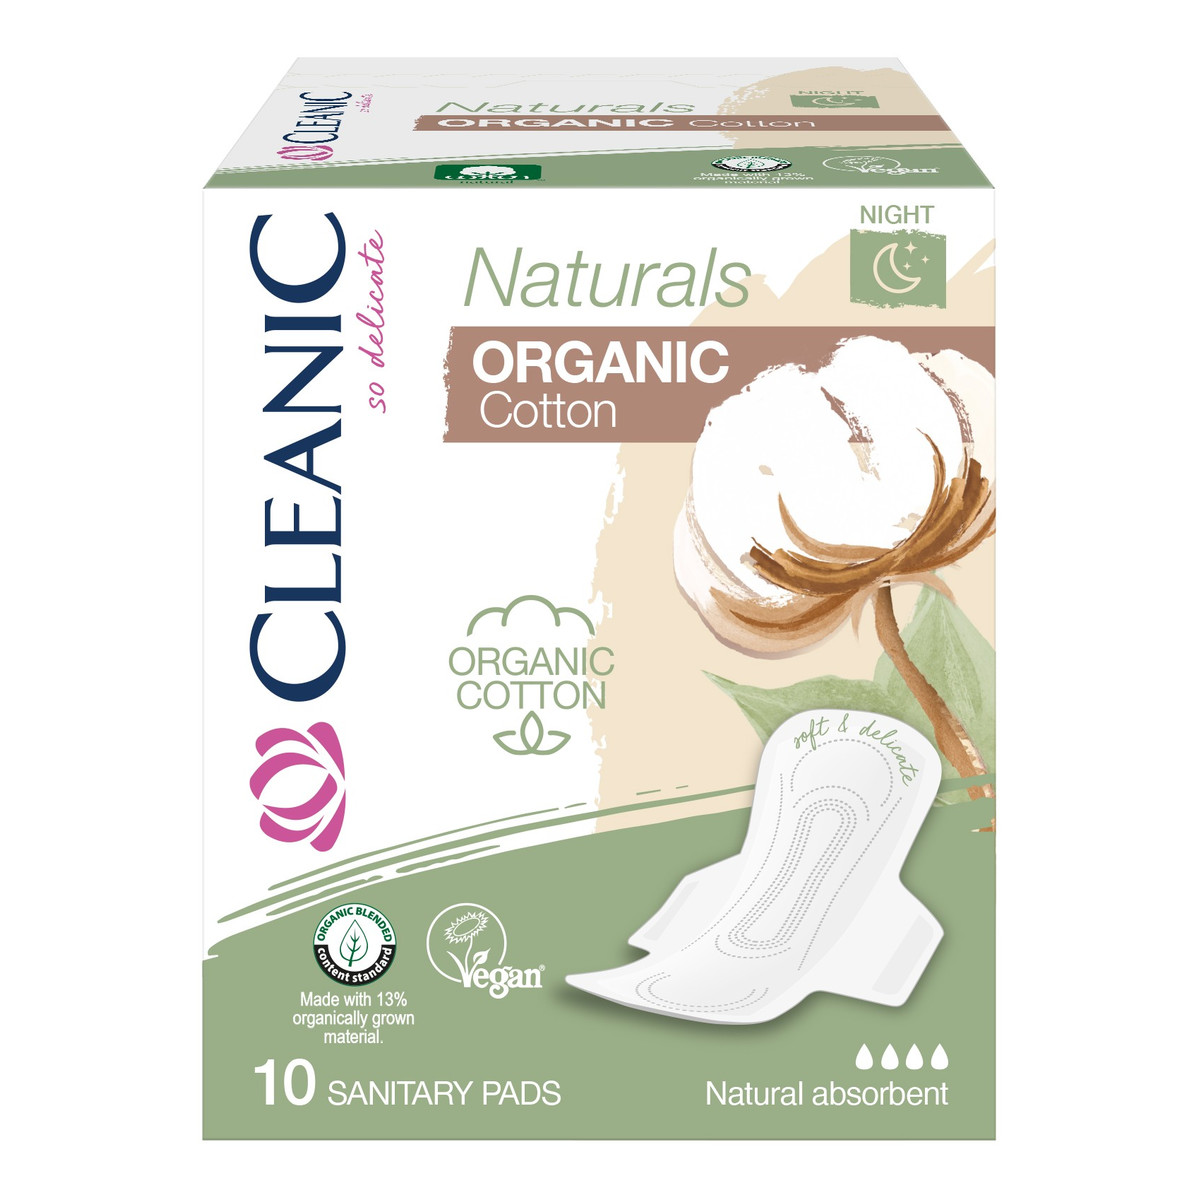 Cleanic Naturals Podpaski na noc Organic Cotton